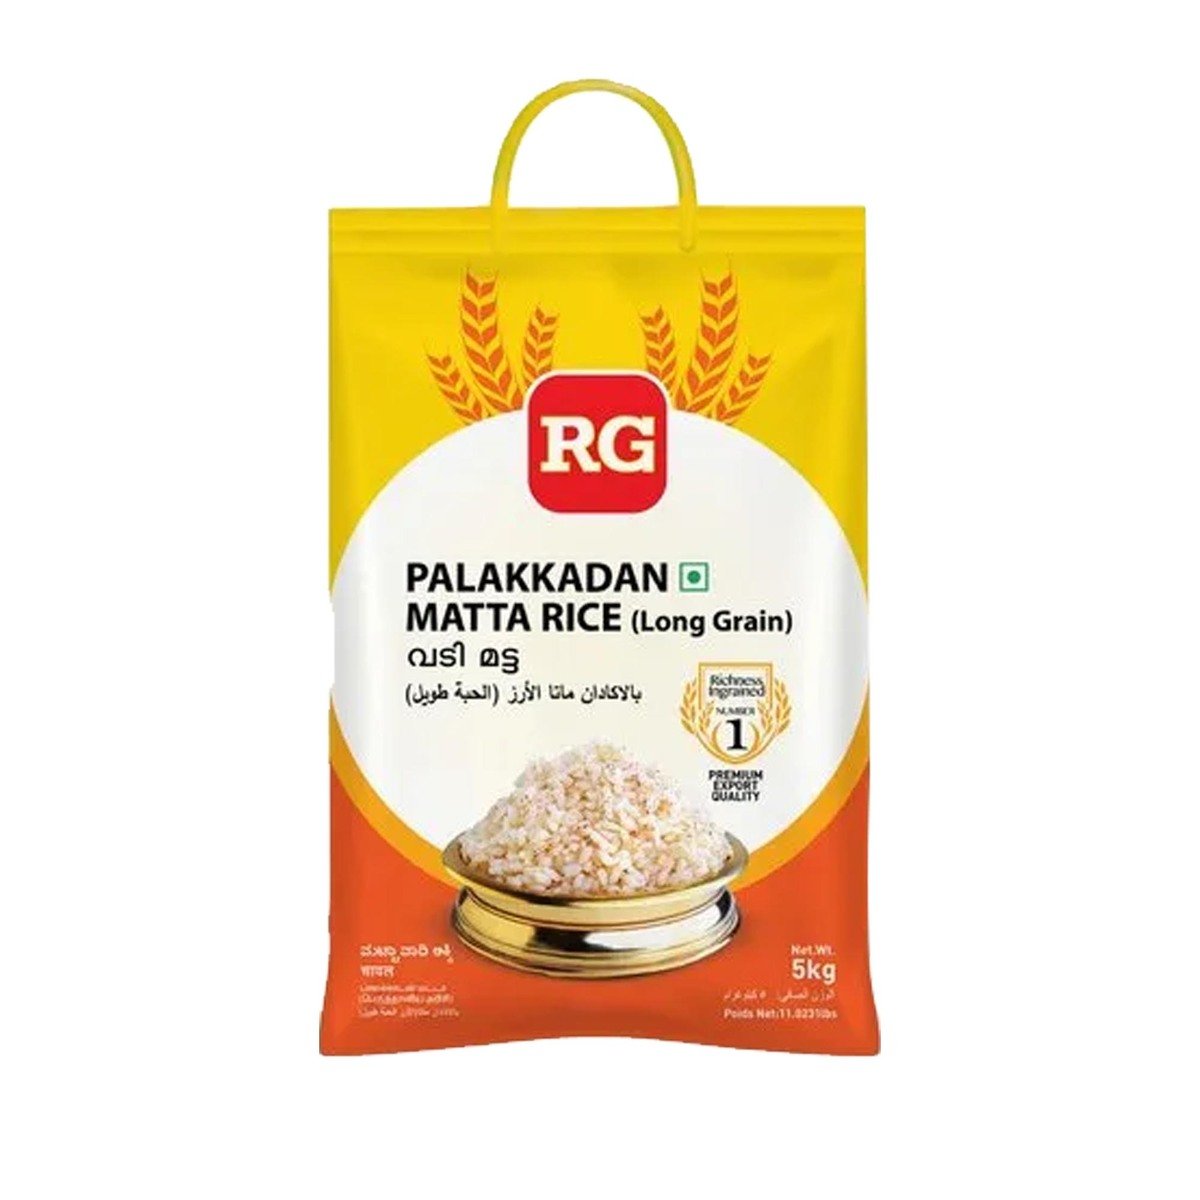 RG Palakkadan Long Grain Matta Rice 5 kg